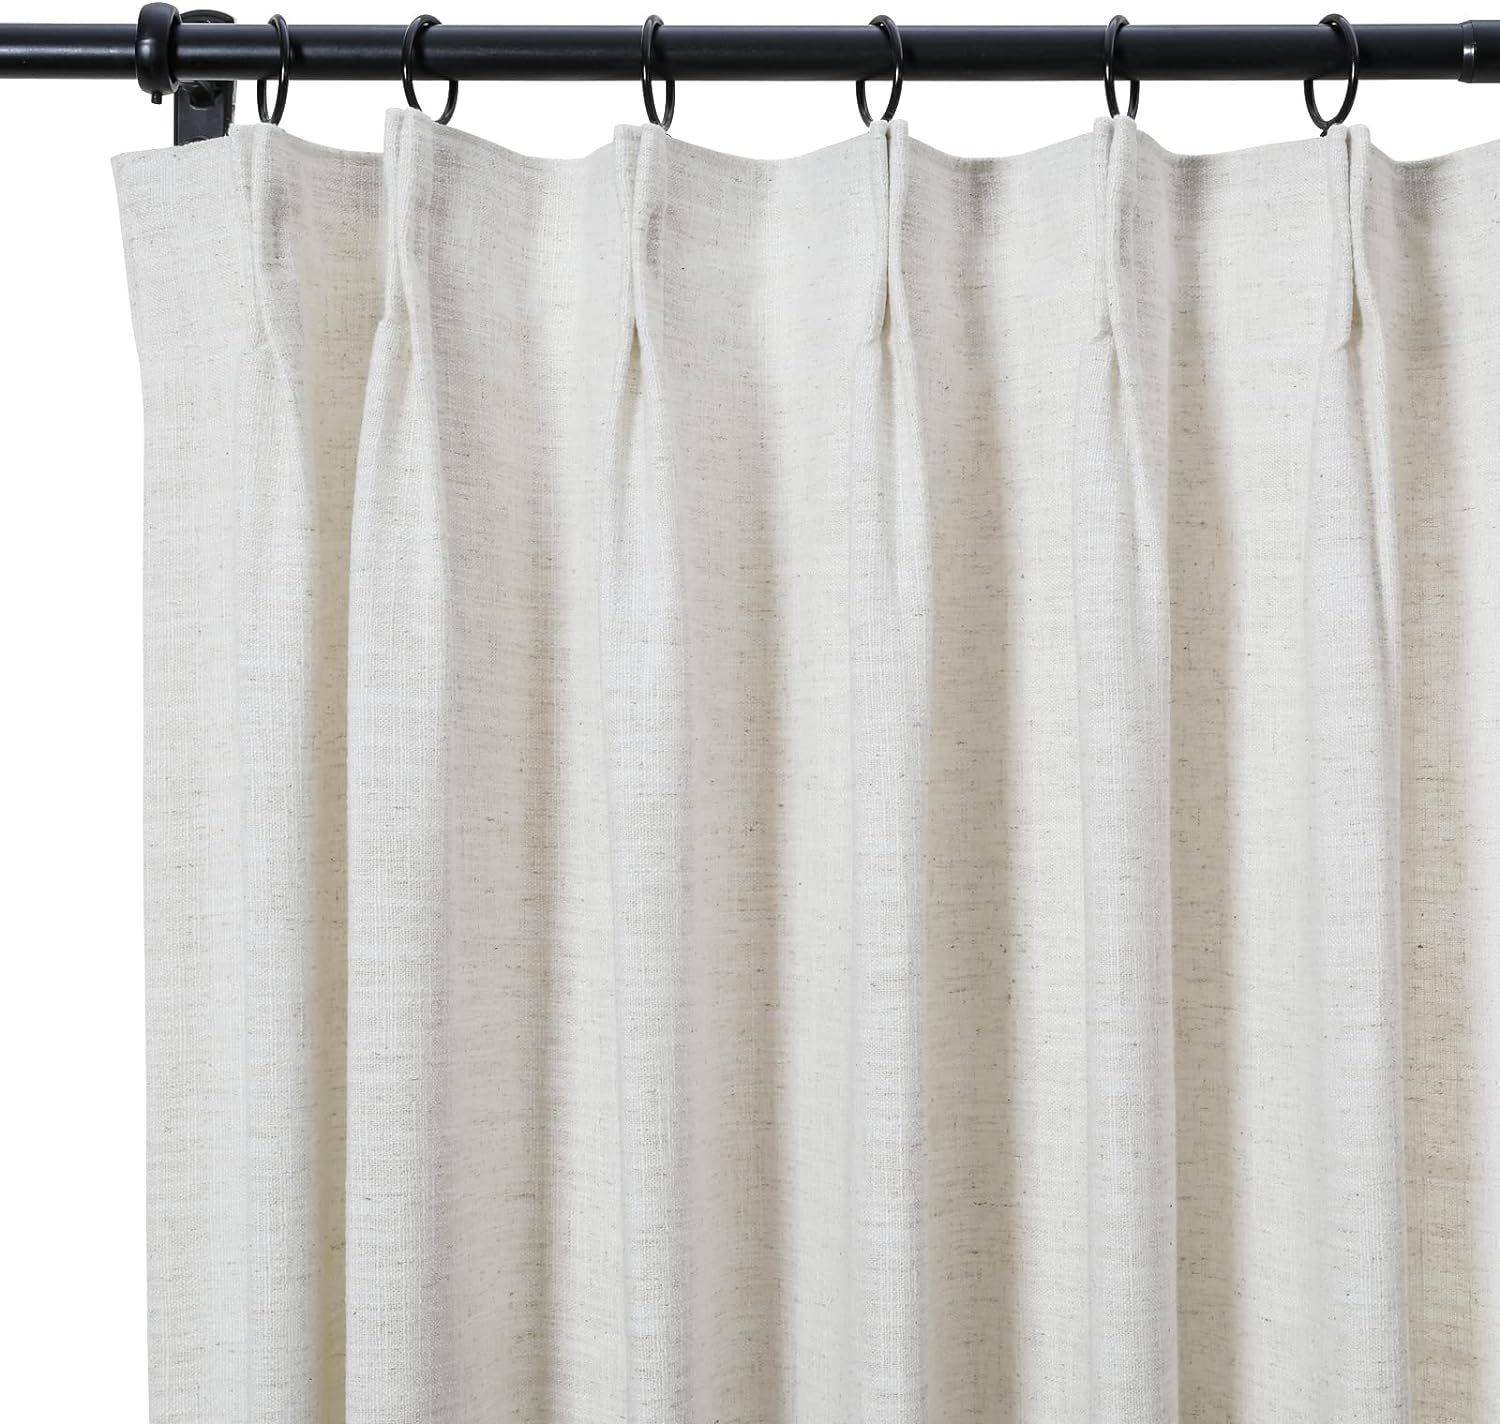 TWOPAGES 52 W x 96 L inch Pinch Pleat Unlined Darkening Drape Faux Linen Curtain Drapery Panel fo... | Amazon (US)